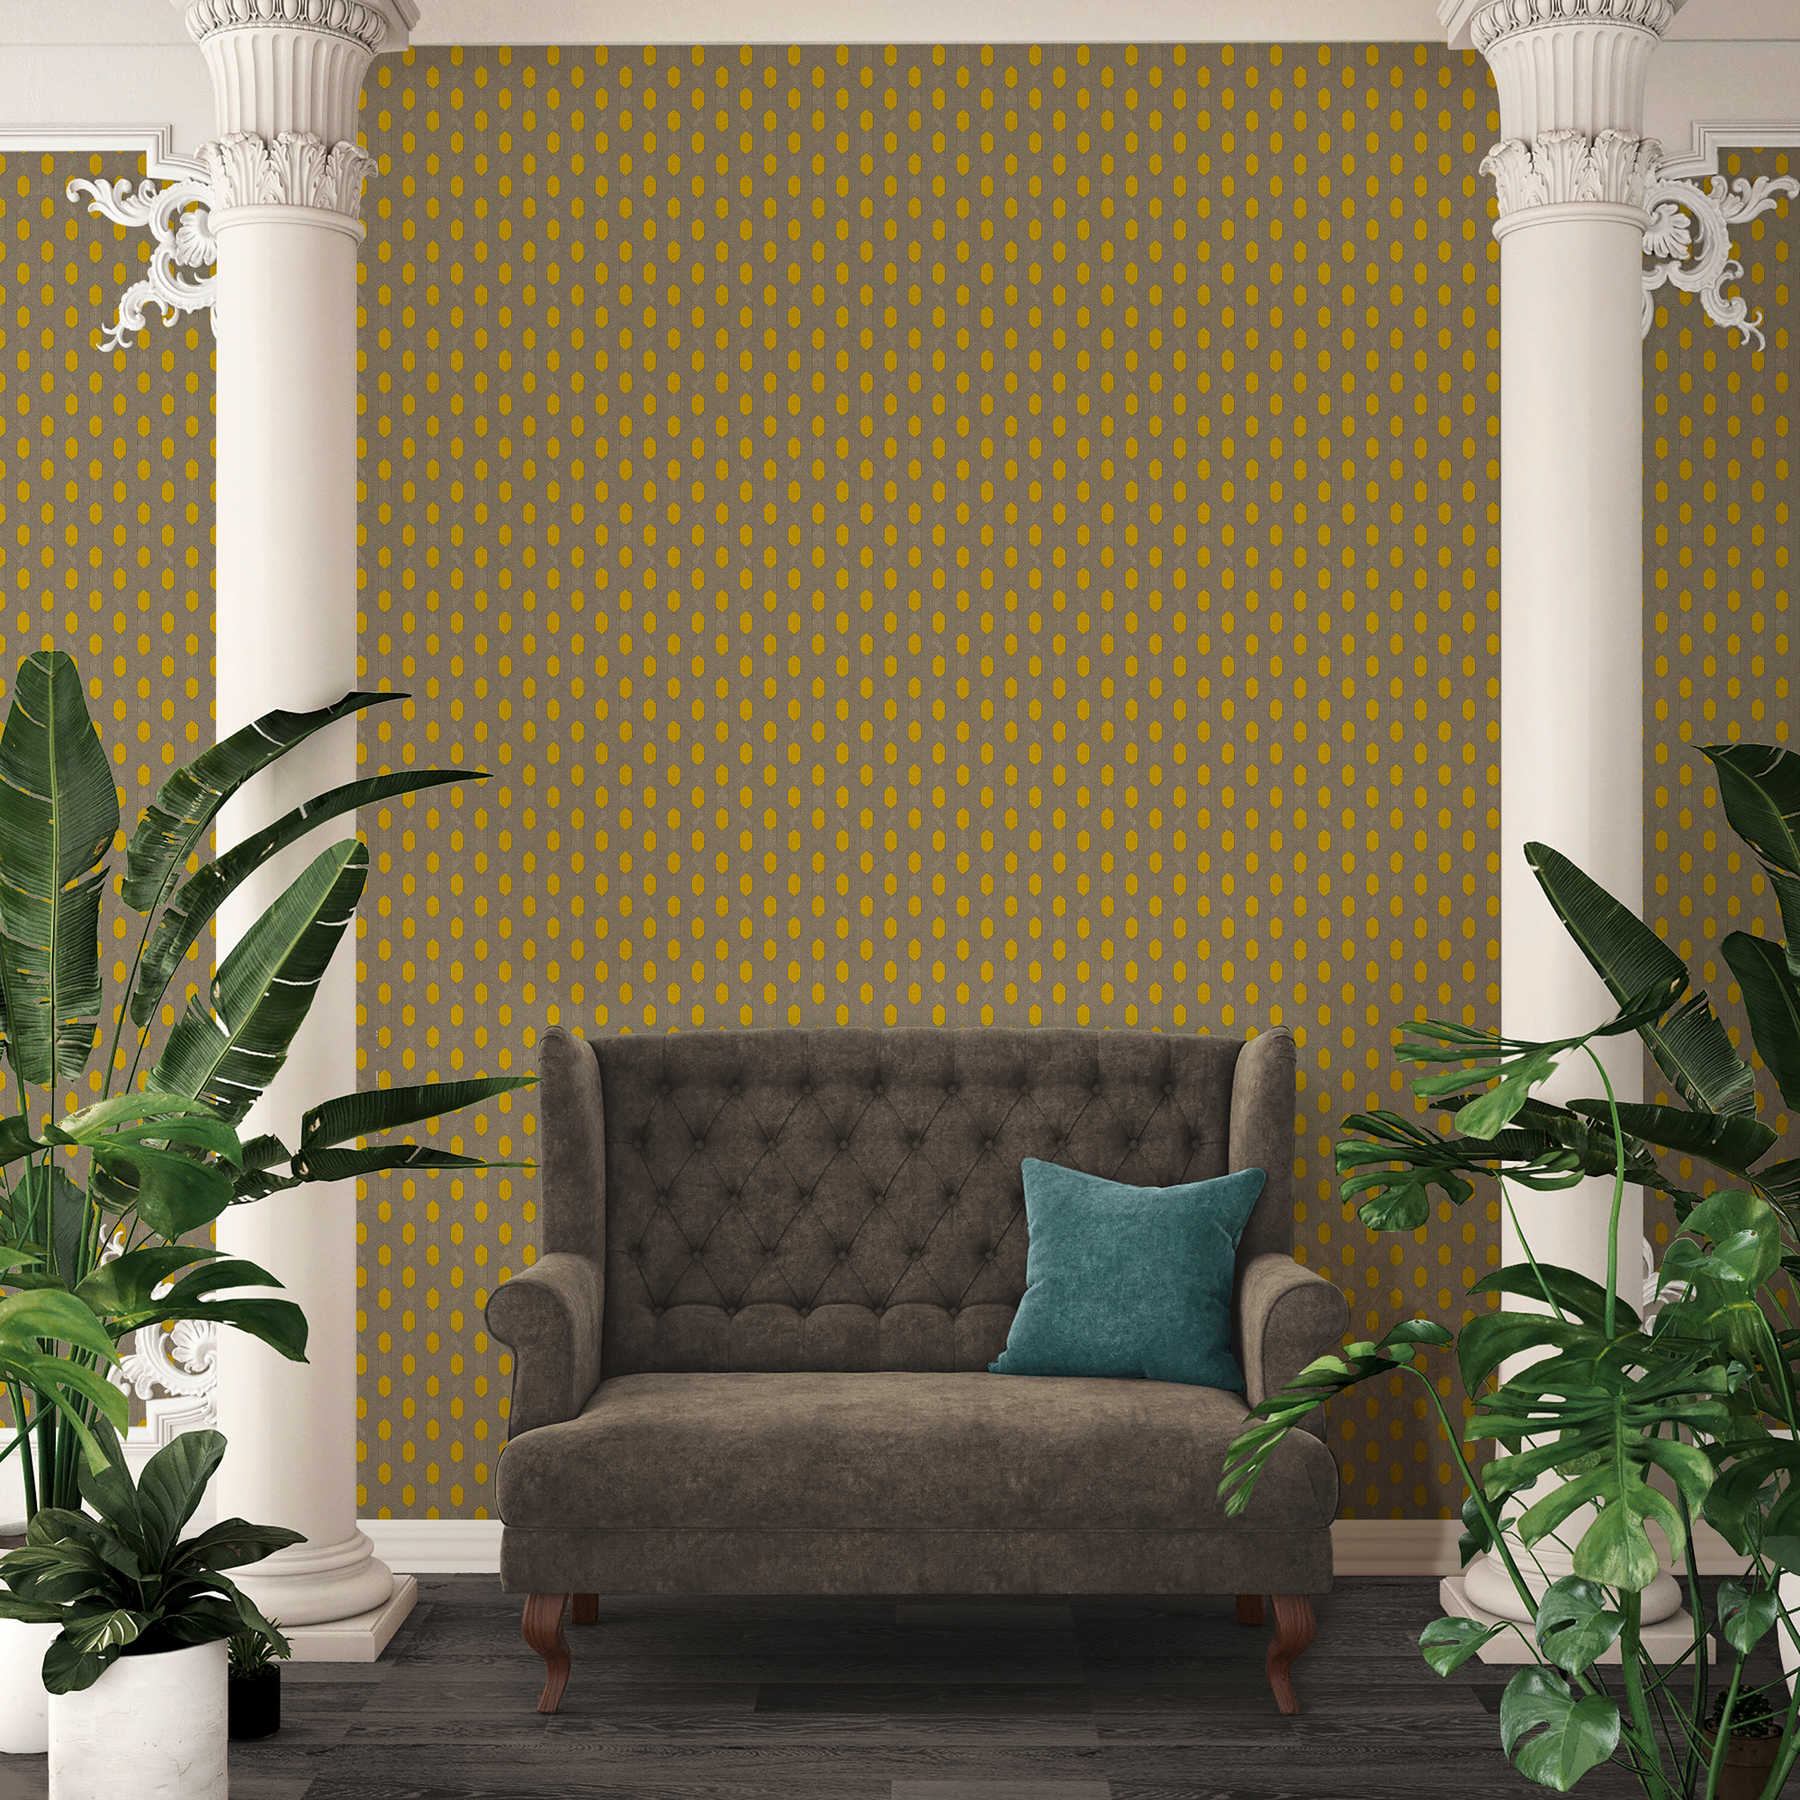             Vliestapete mit geometrischem Punkte-Muster – Gelb, Grau, Braun
        